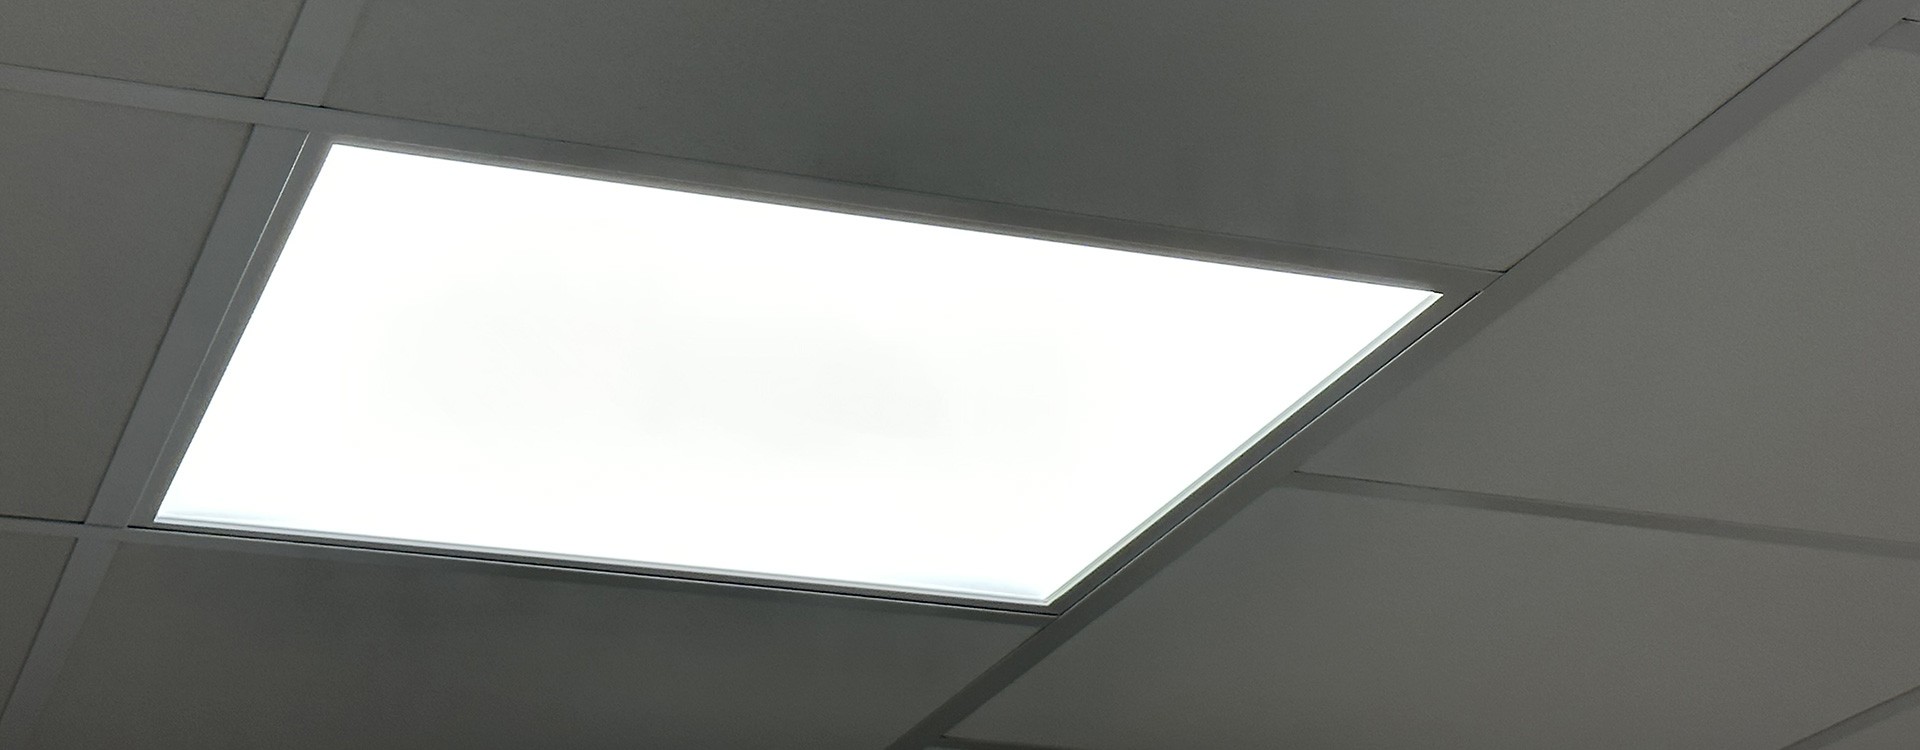 Dalle LED Plafond Professionnel: Comparaison entre Edgelit et Backlit